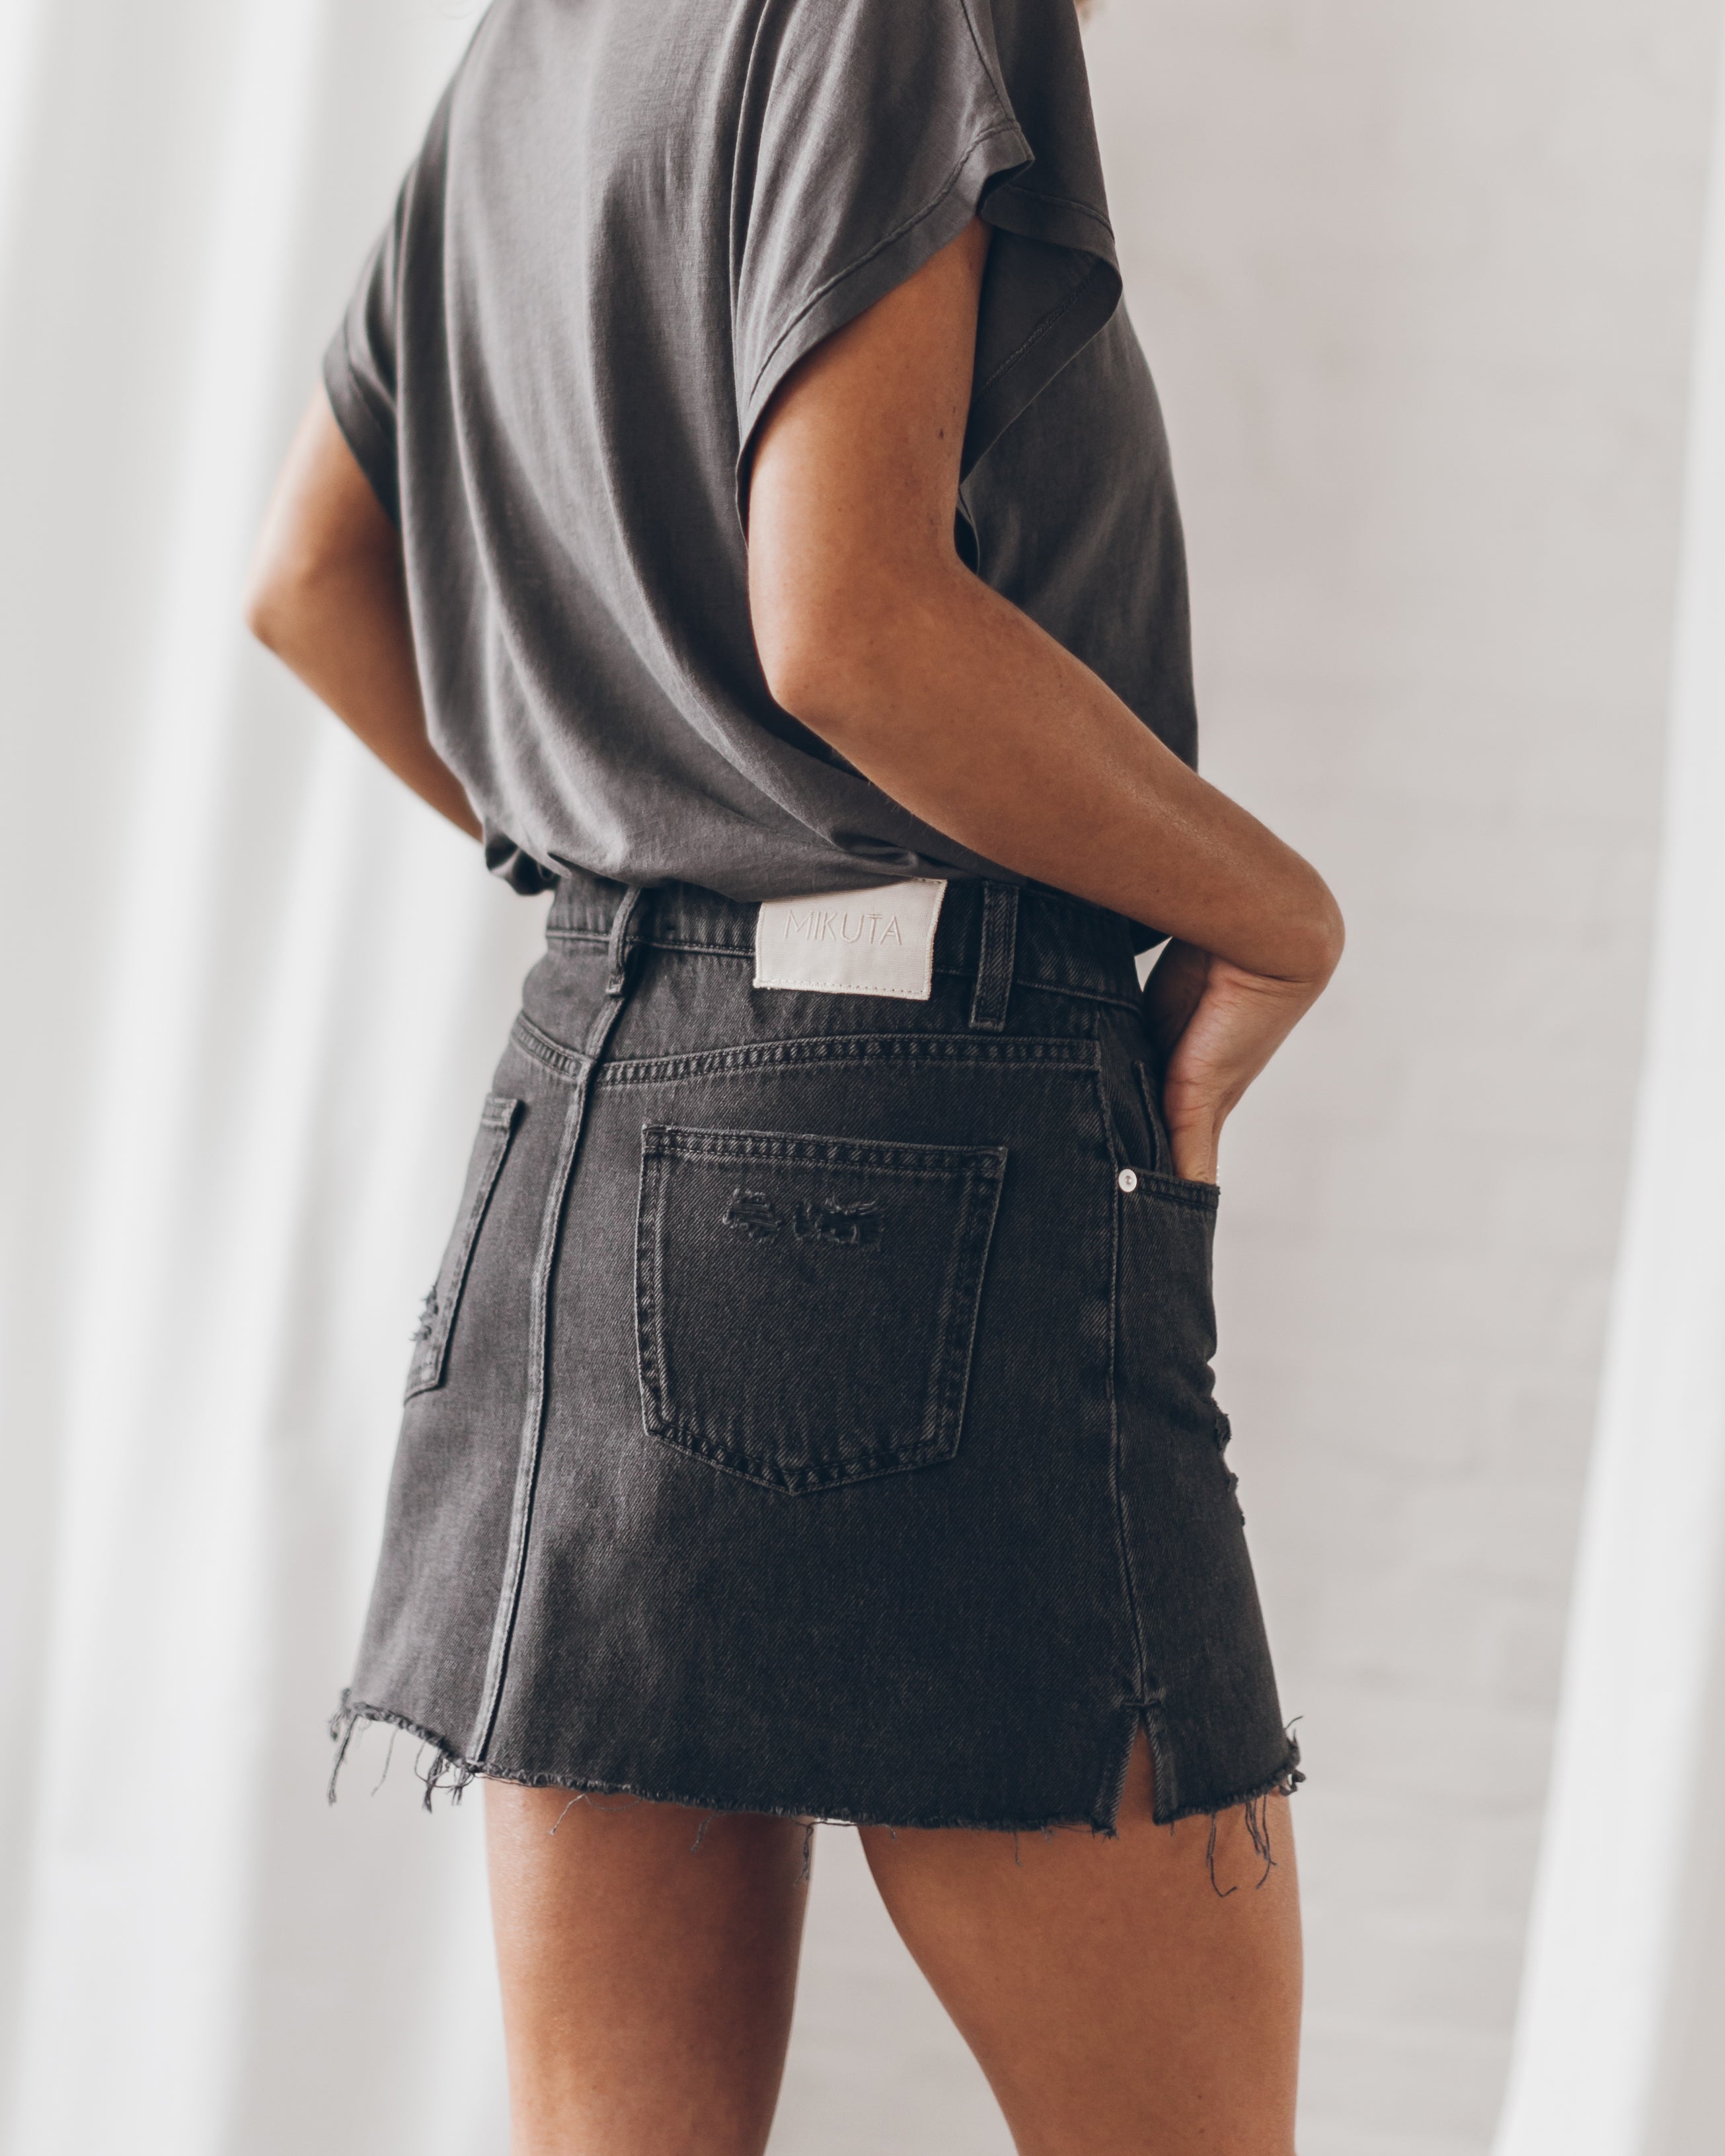 MIKUTA The Black Denim Skirt